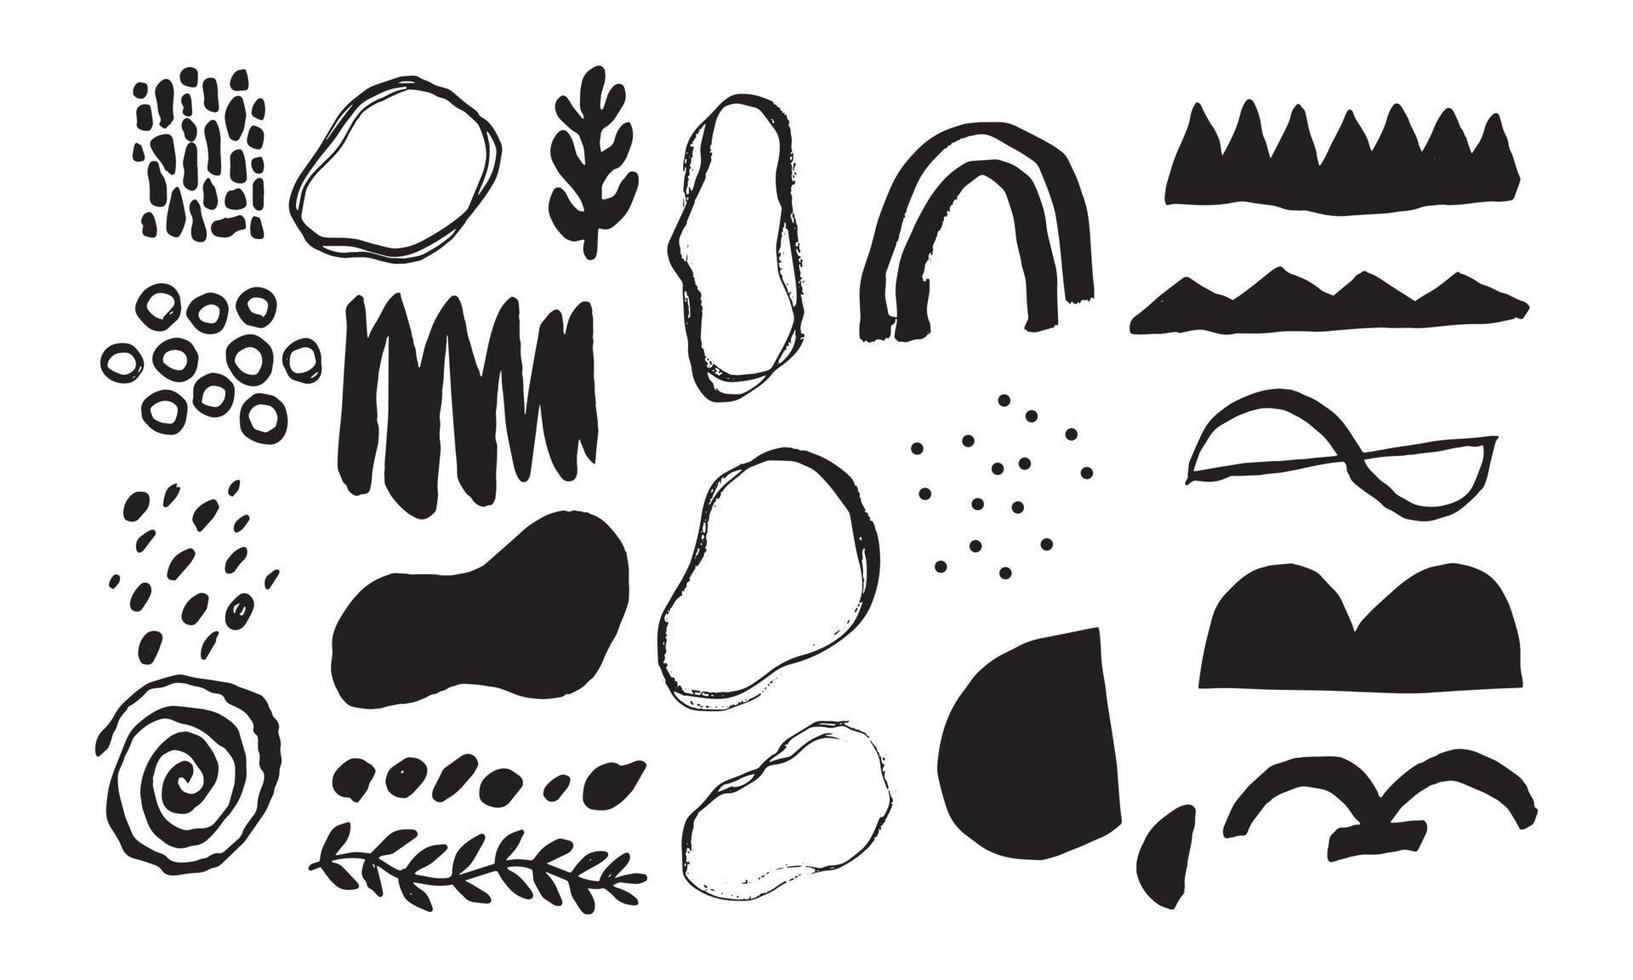 dibujado a mano de varios objetos de doodle de forma, trazo y océano. colección de ilustración vectorial de moda moderna contemporánea abstracta. vector